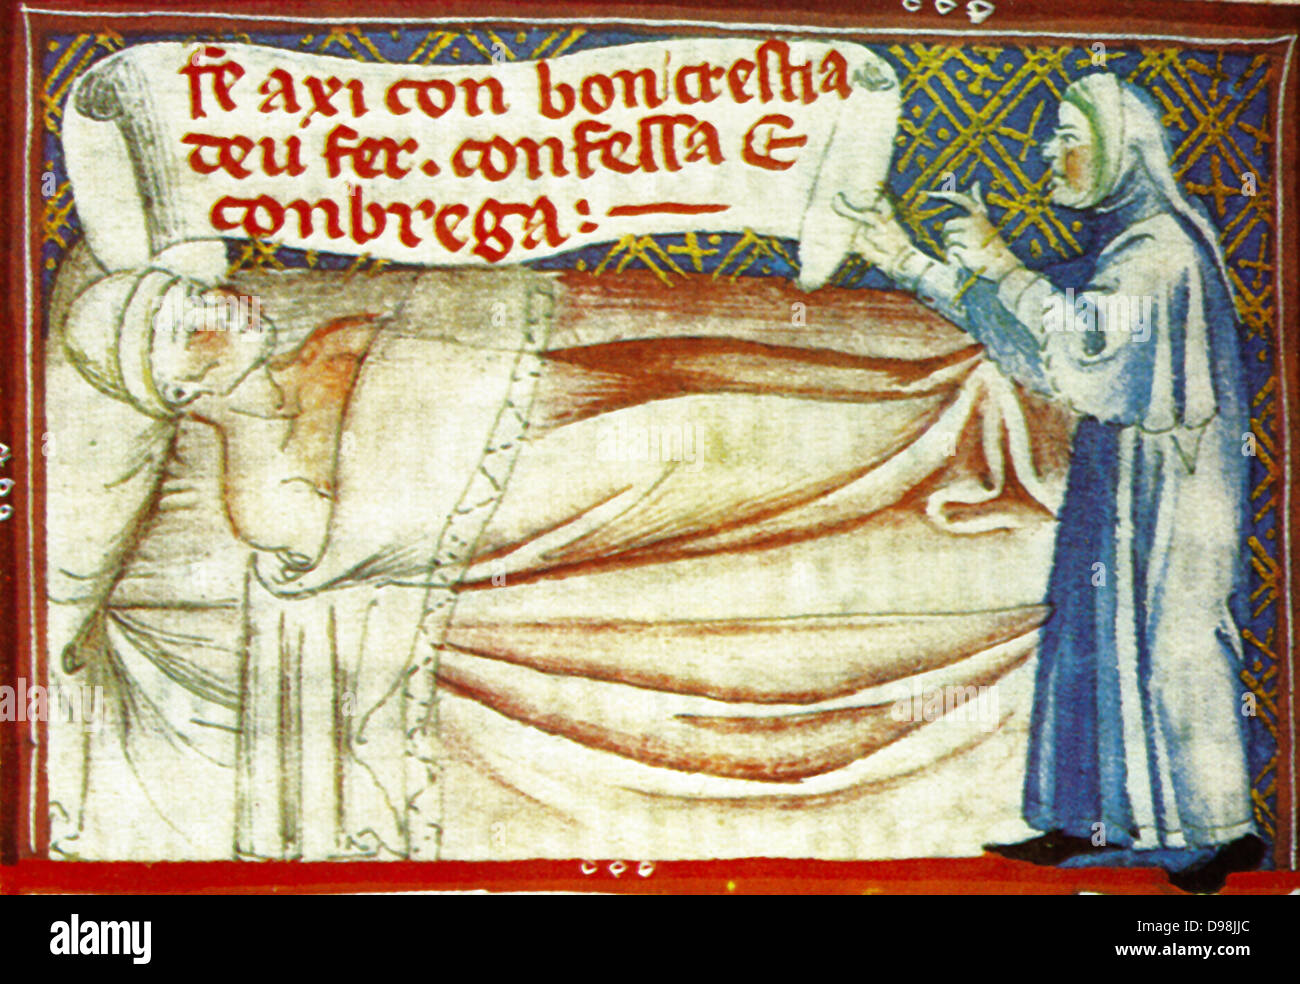 Escena desde el siglo XIV, manuscrito ilustrado del Breviari d'amor. Ilustra los siete actos de misericordia. Aquí se muestra visitando enfermos Foto de stock